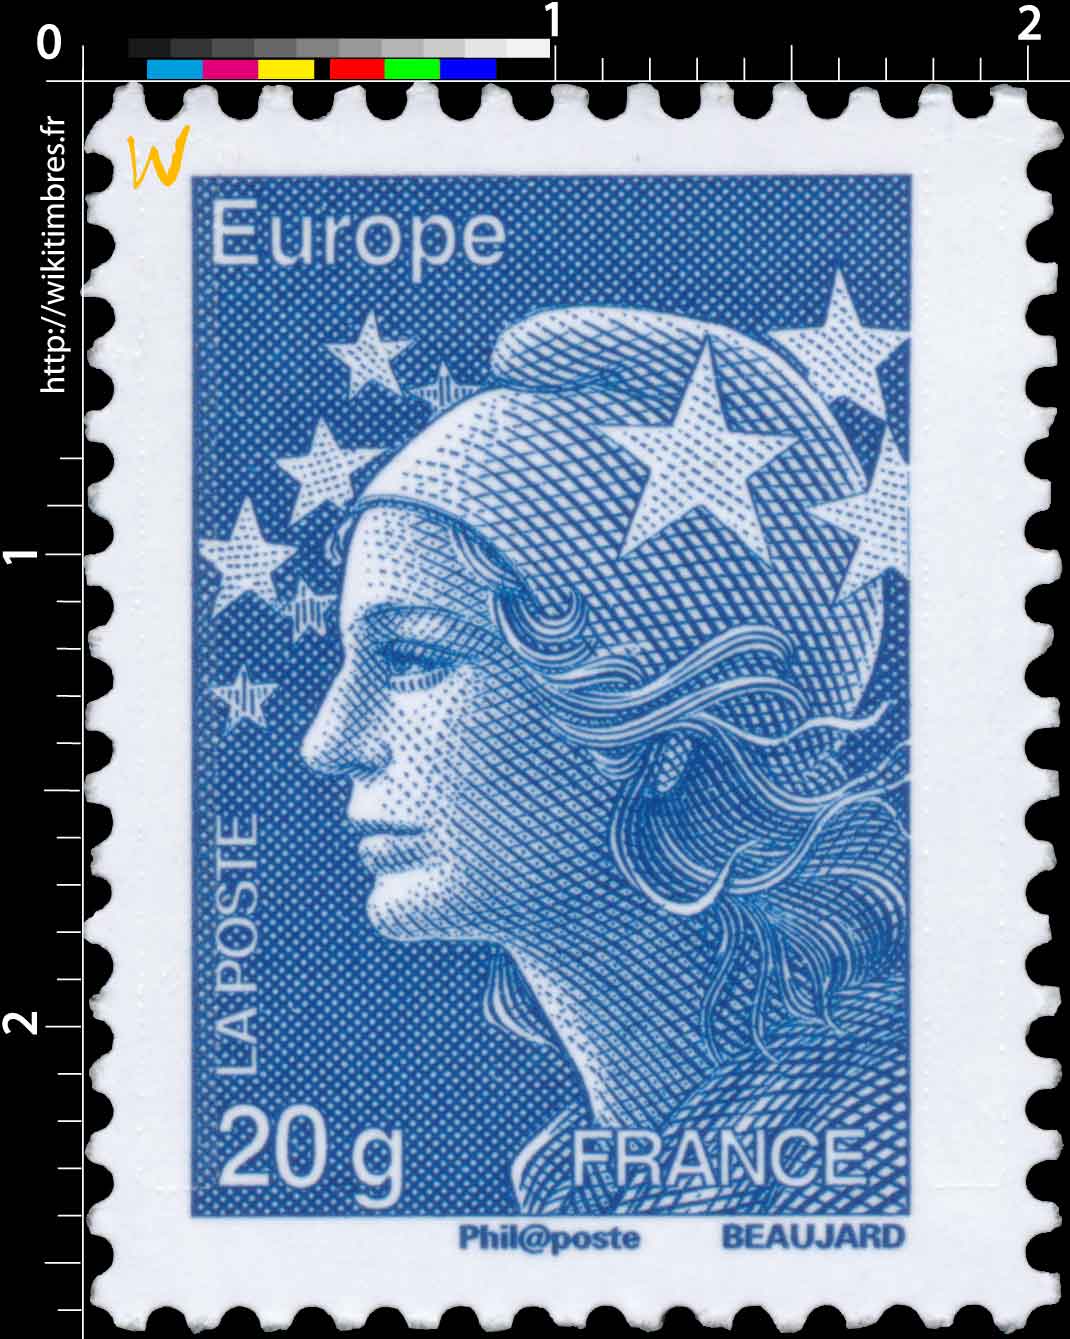 Europe - type Marianne de Beaujard